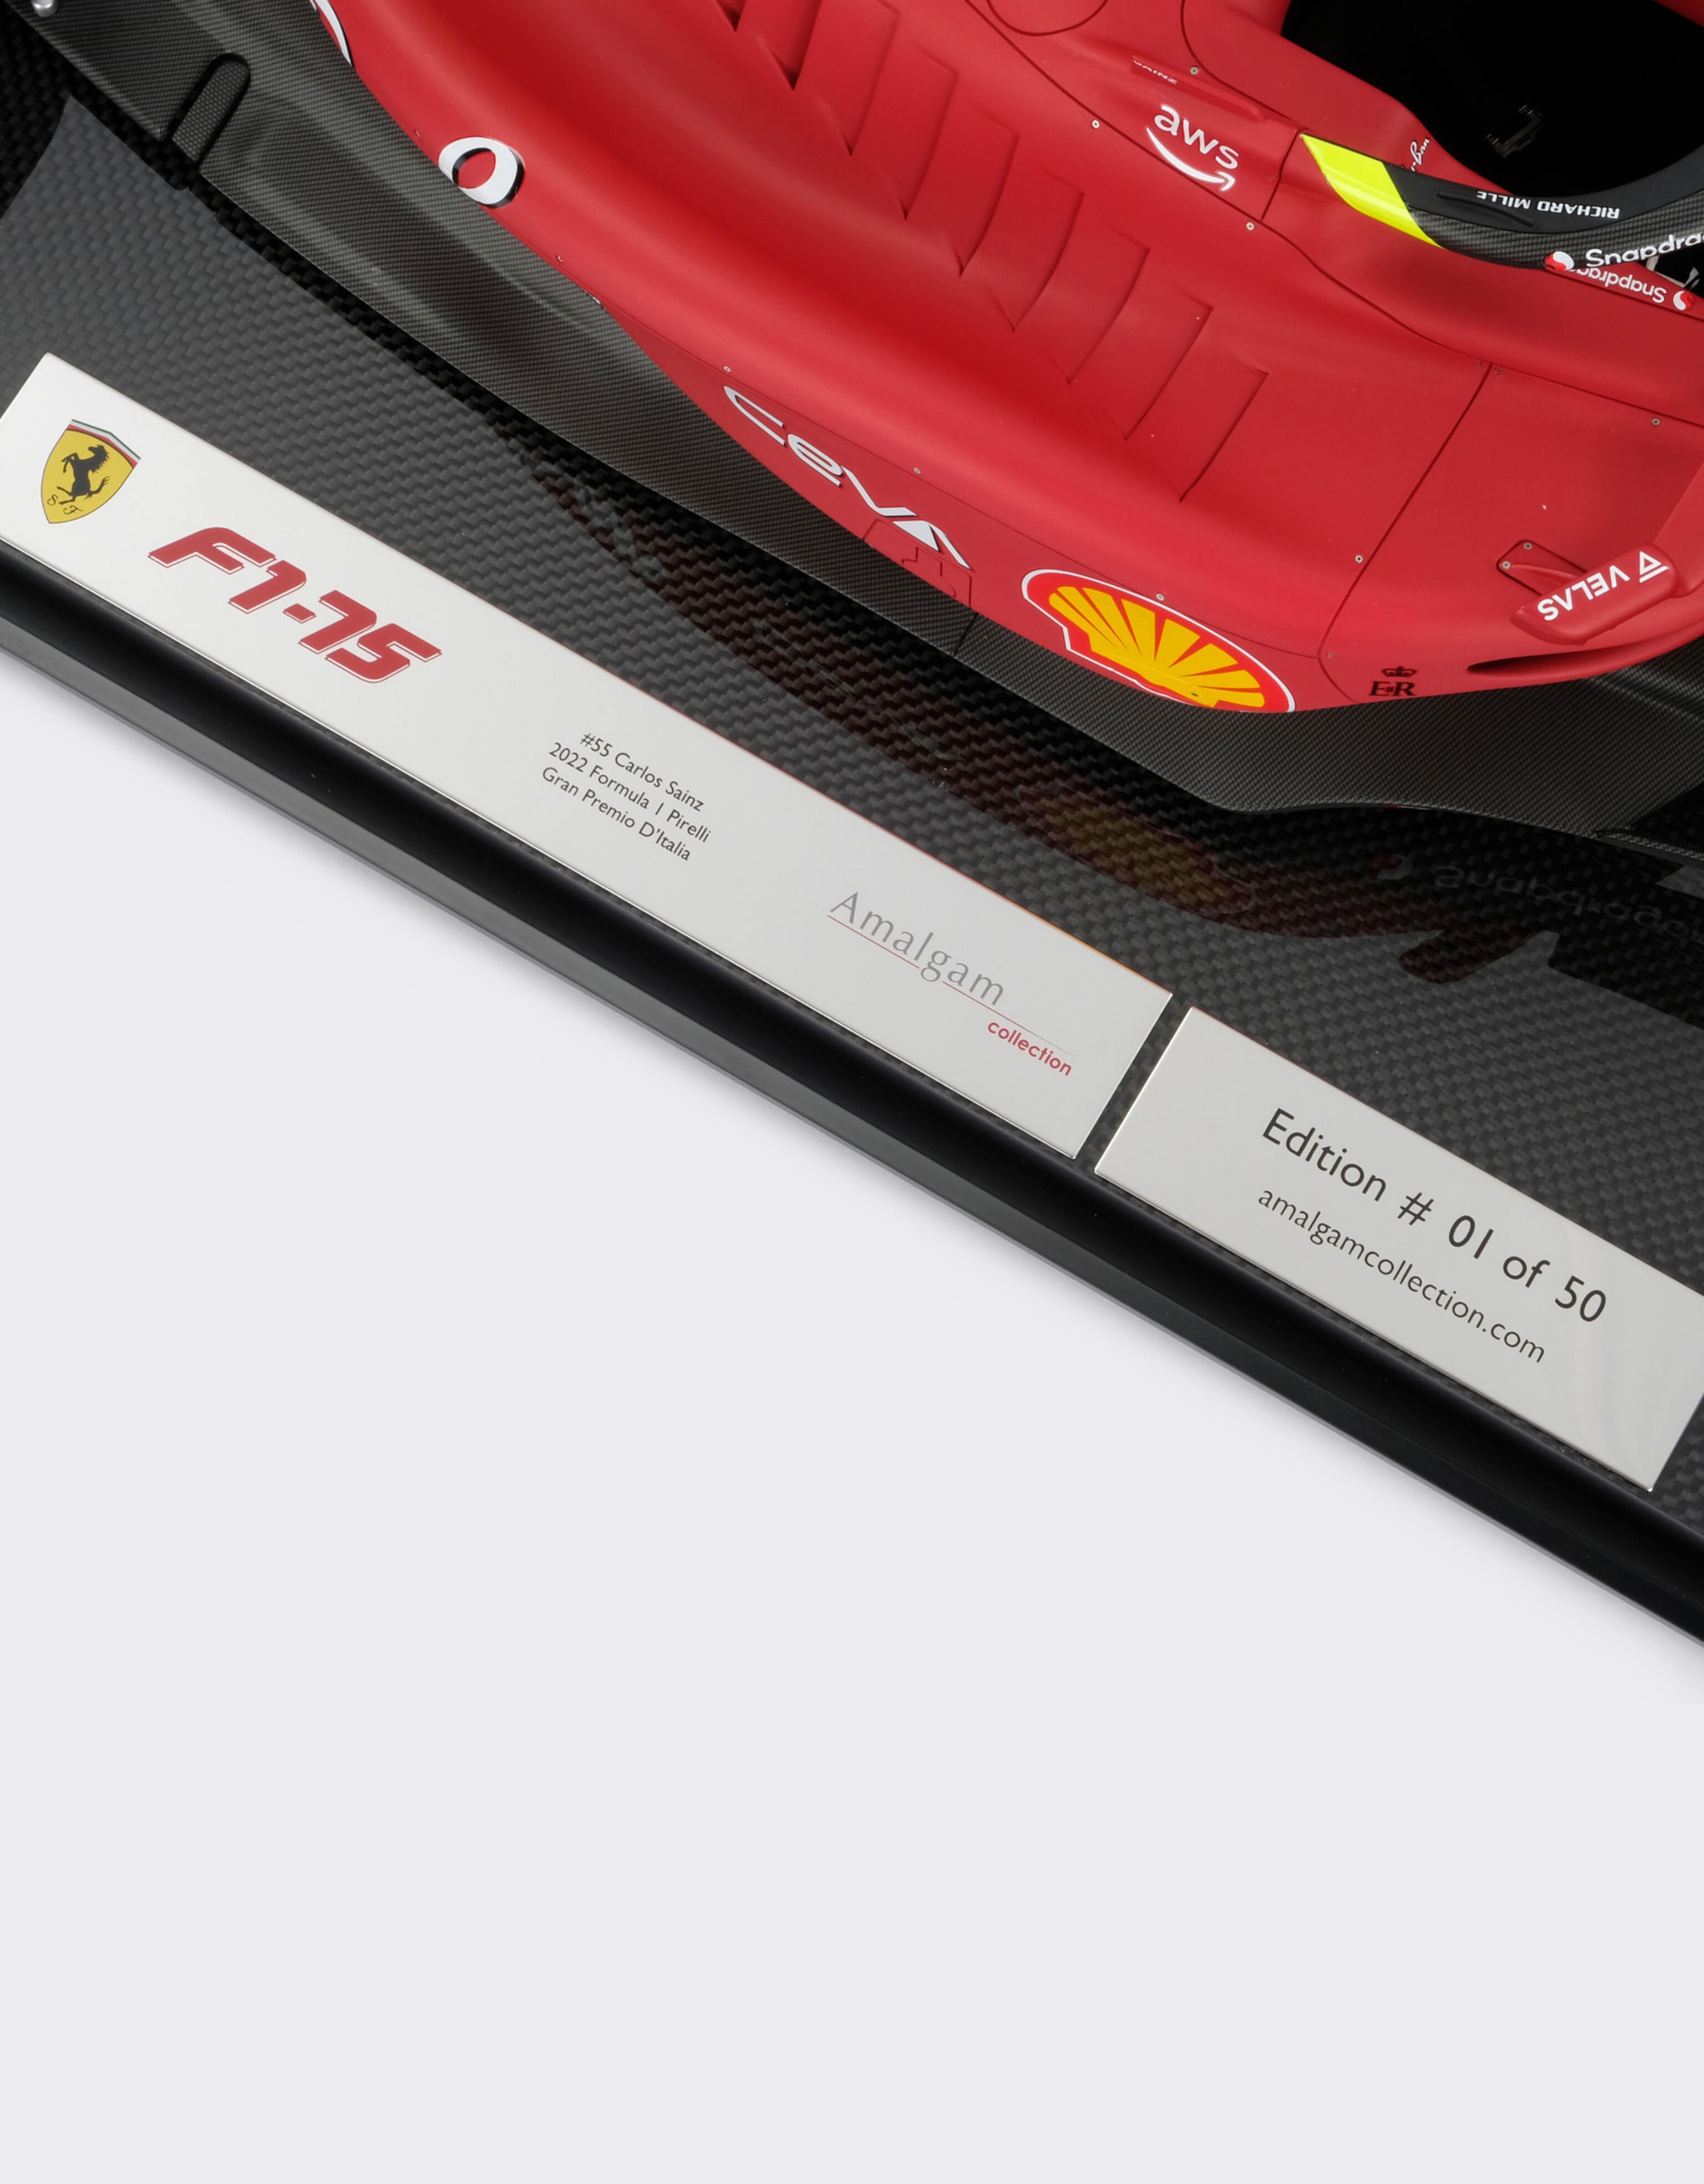 Ferrari Ferrari F1-75 model in 1:8 scale Rosso Corsa F1021f